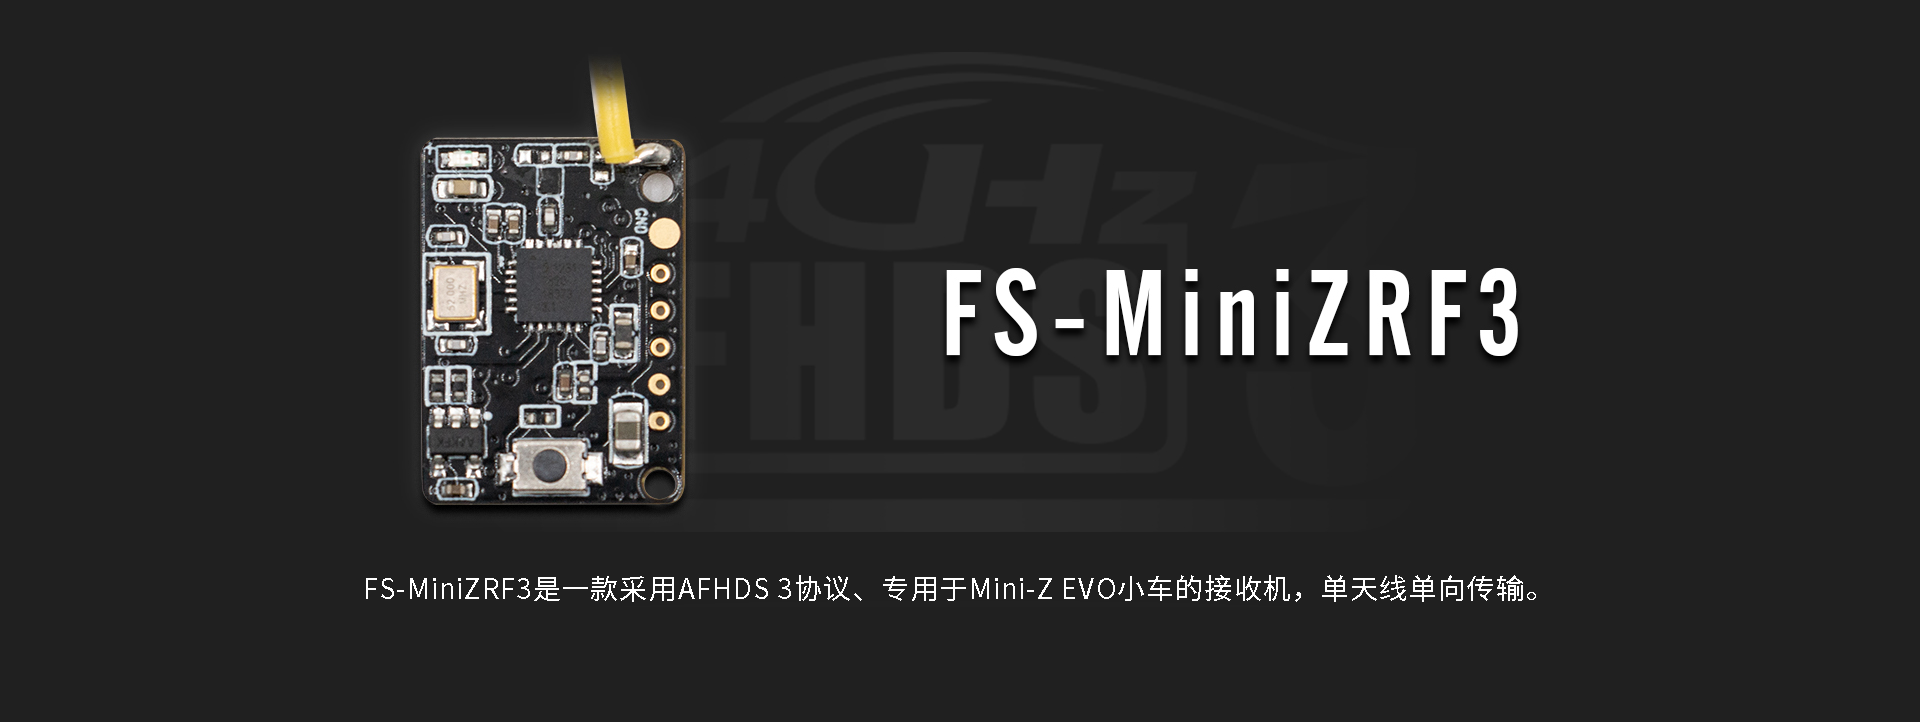 FS-MiniZRF3